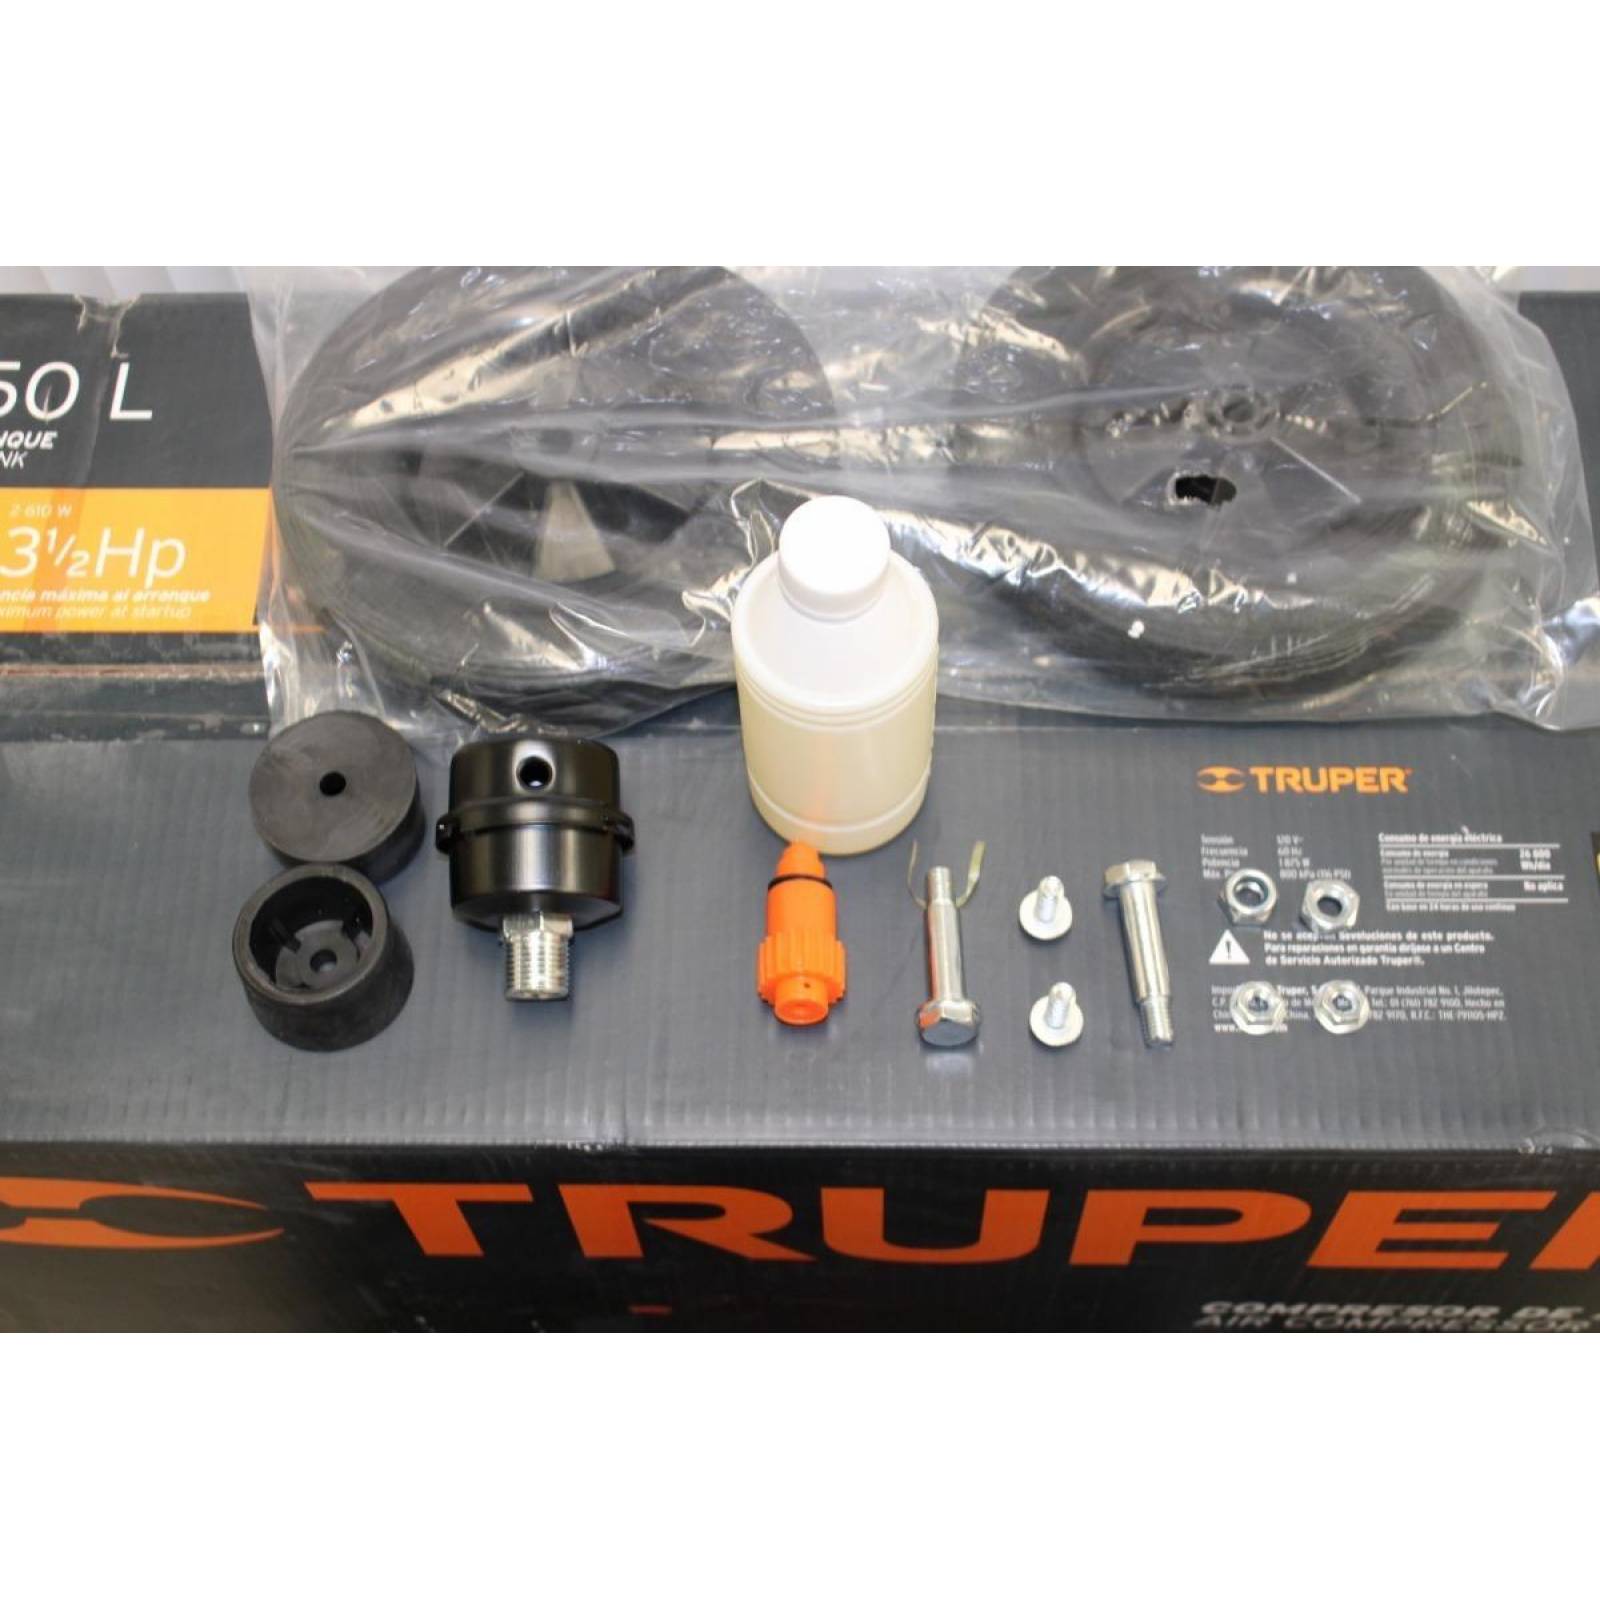 Truper COMP-50LT 50L horizontal compressor, 3-1/2 HP (max power), 127V